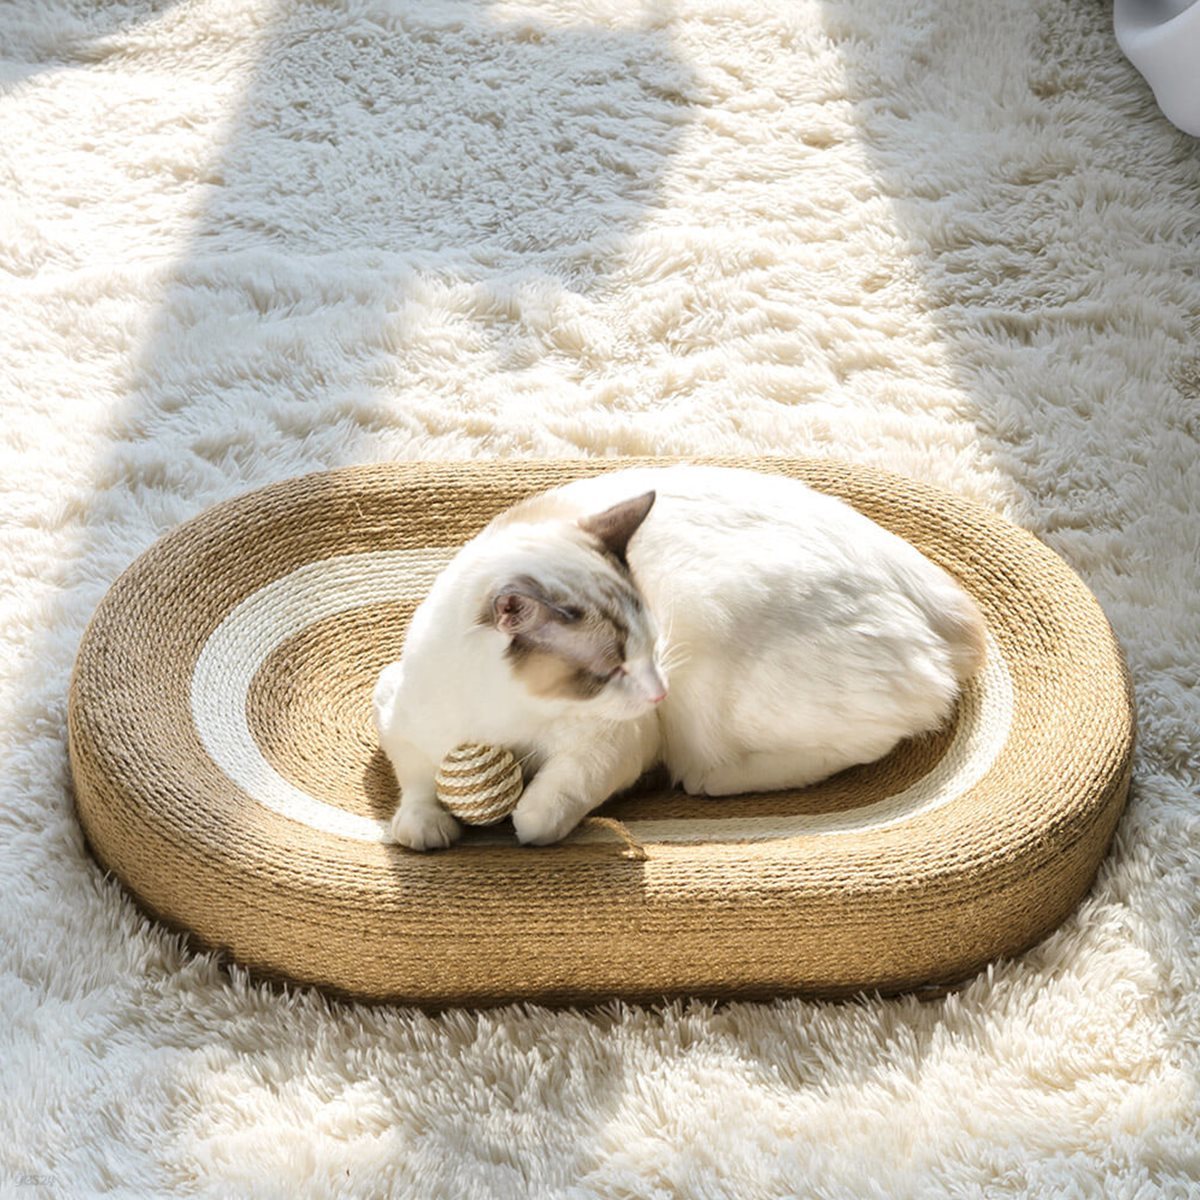 [레토] 고양이 스크래쳐 특대형 사이잘삼 침대 60x40 (LPS-SS03)